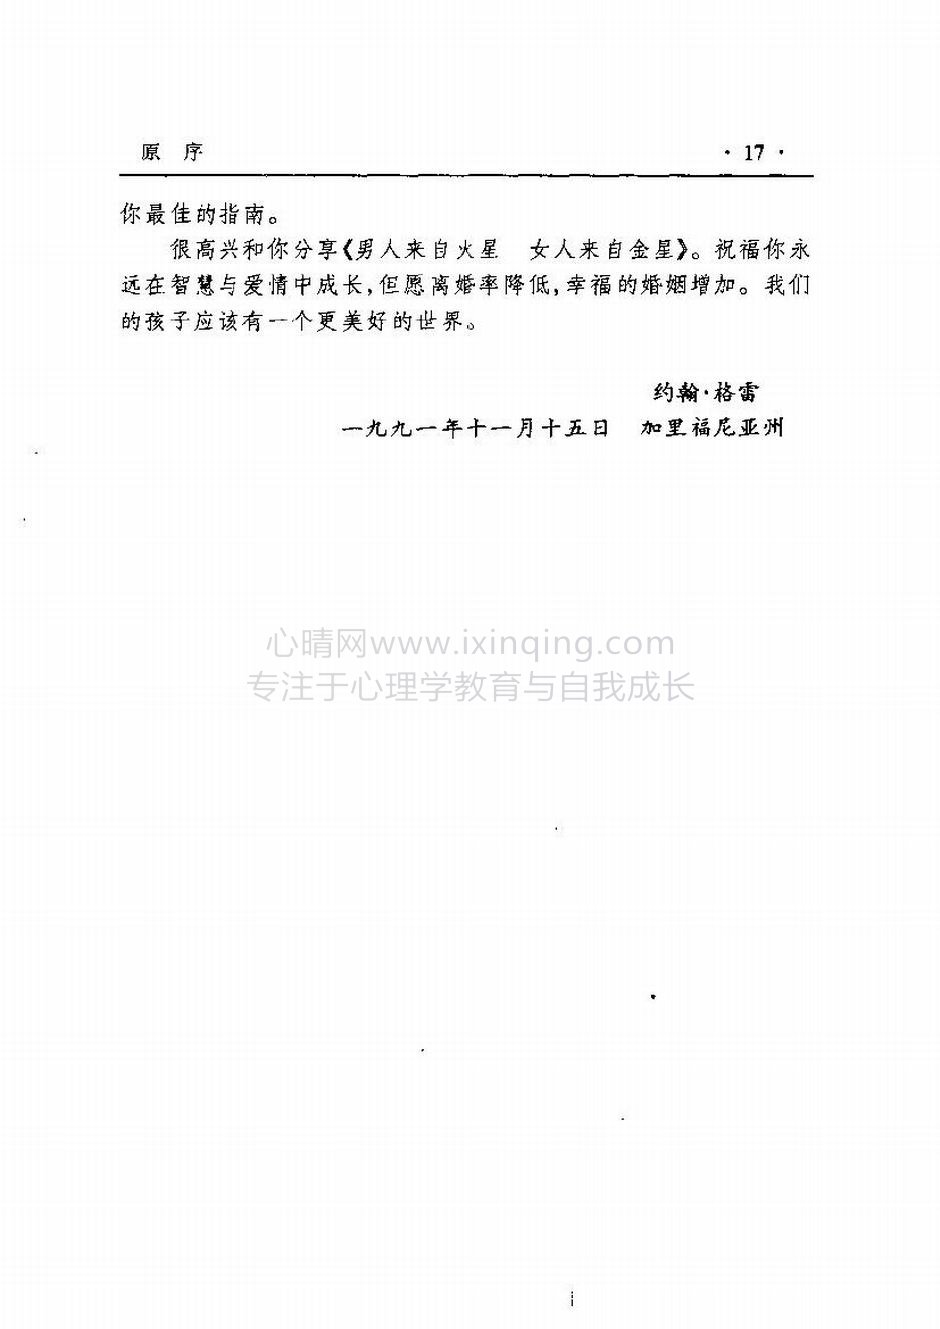 封面、原序、译序、中文版出版前言(19)